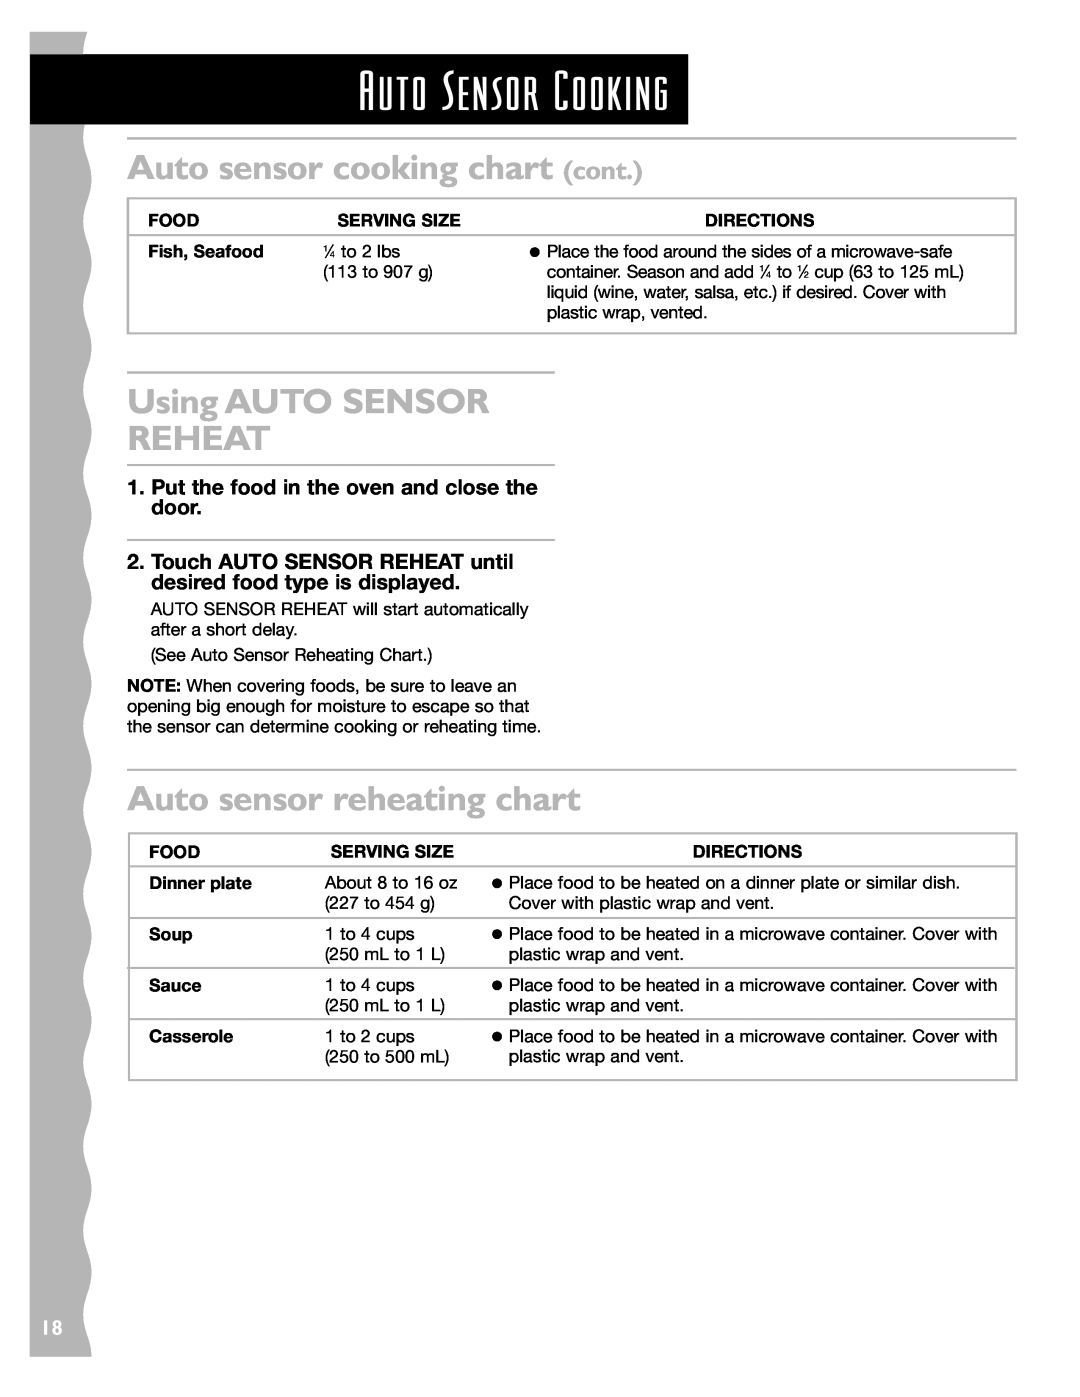 KitchenAid KCMS185JBK, KCMS145JBT Auto sensor cooking chart cont, Using AUTO SENSOR REHEAT, Auto sensor reheating chart 